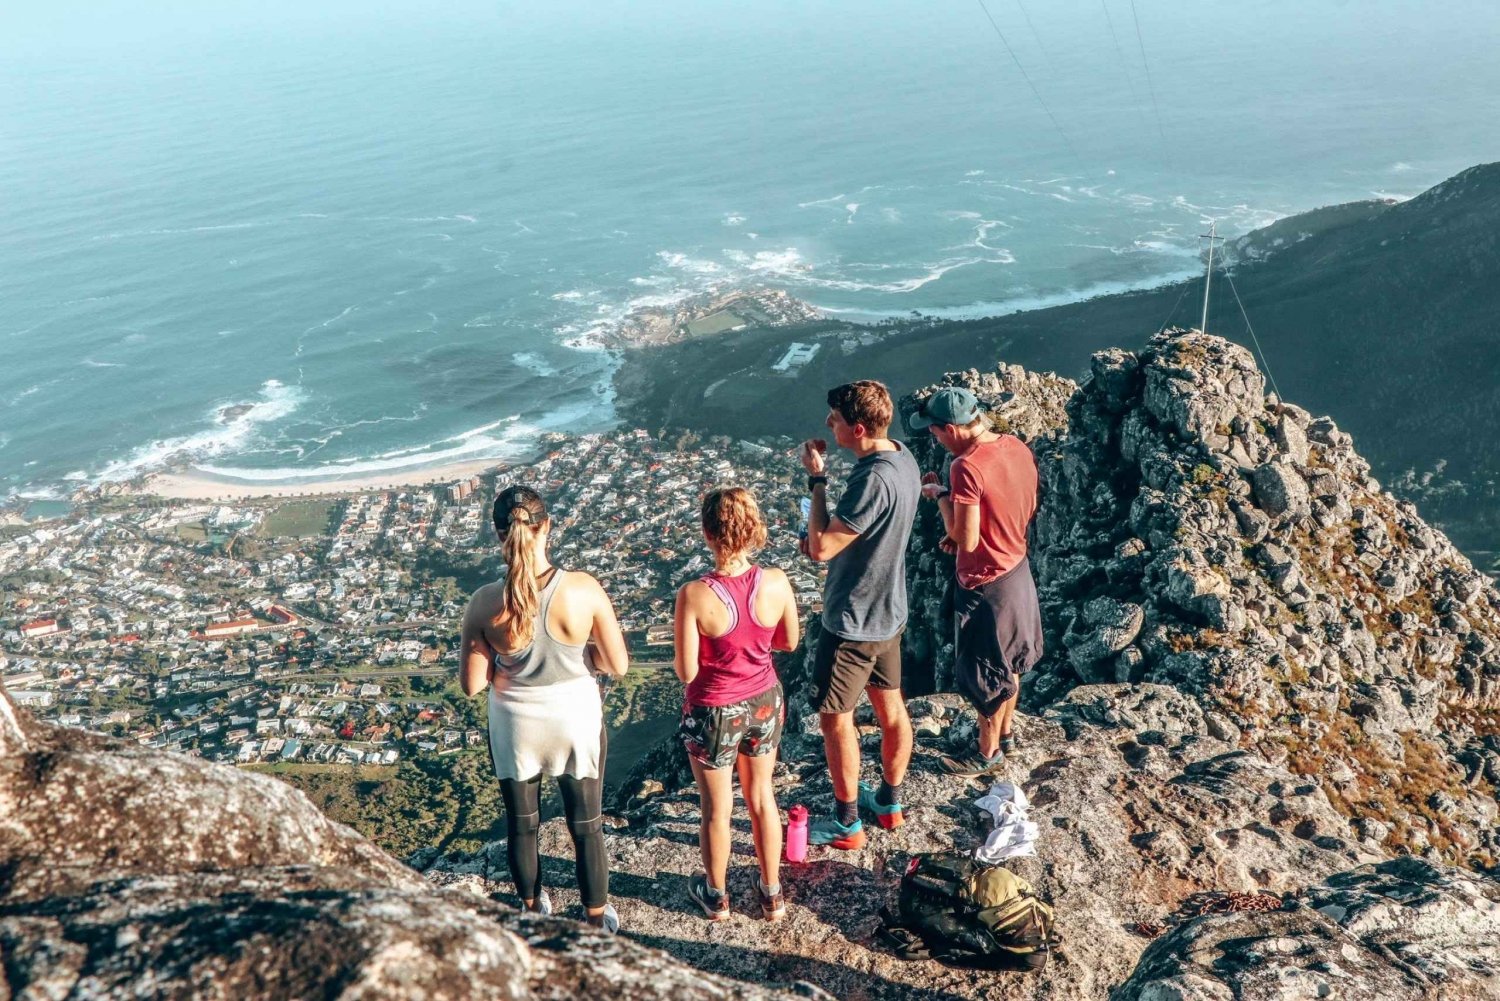 Città del Capo: Table Mountain Hike via India Venster